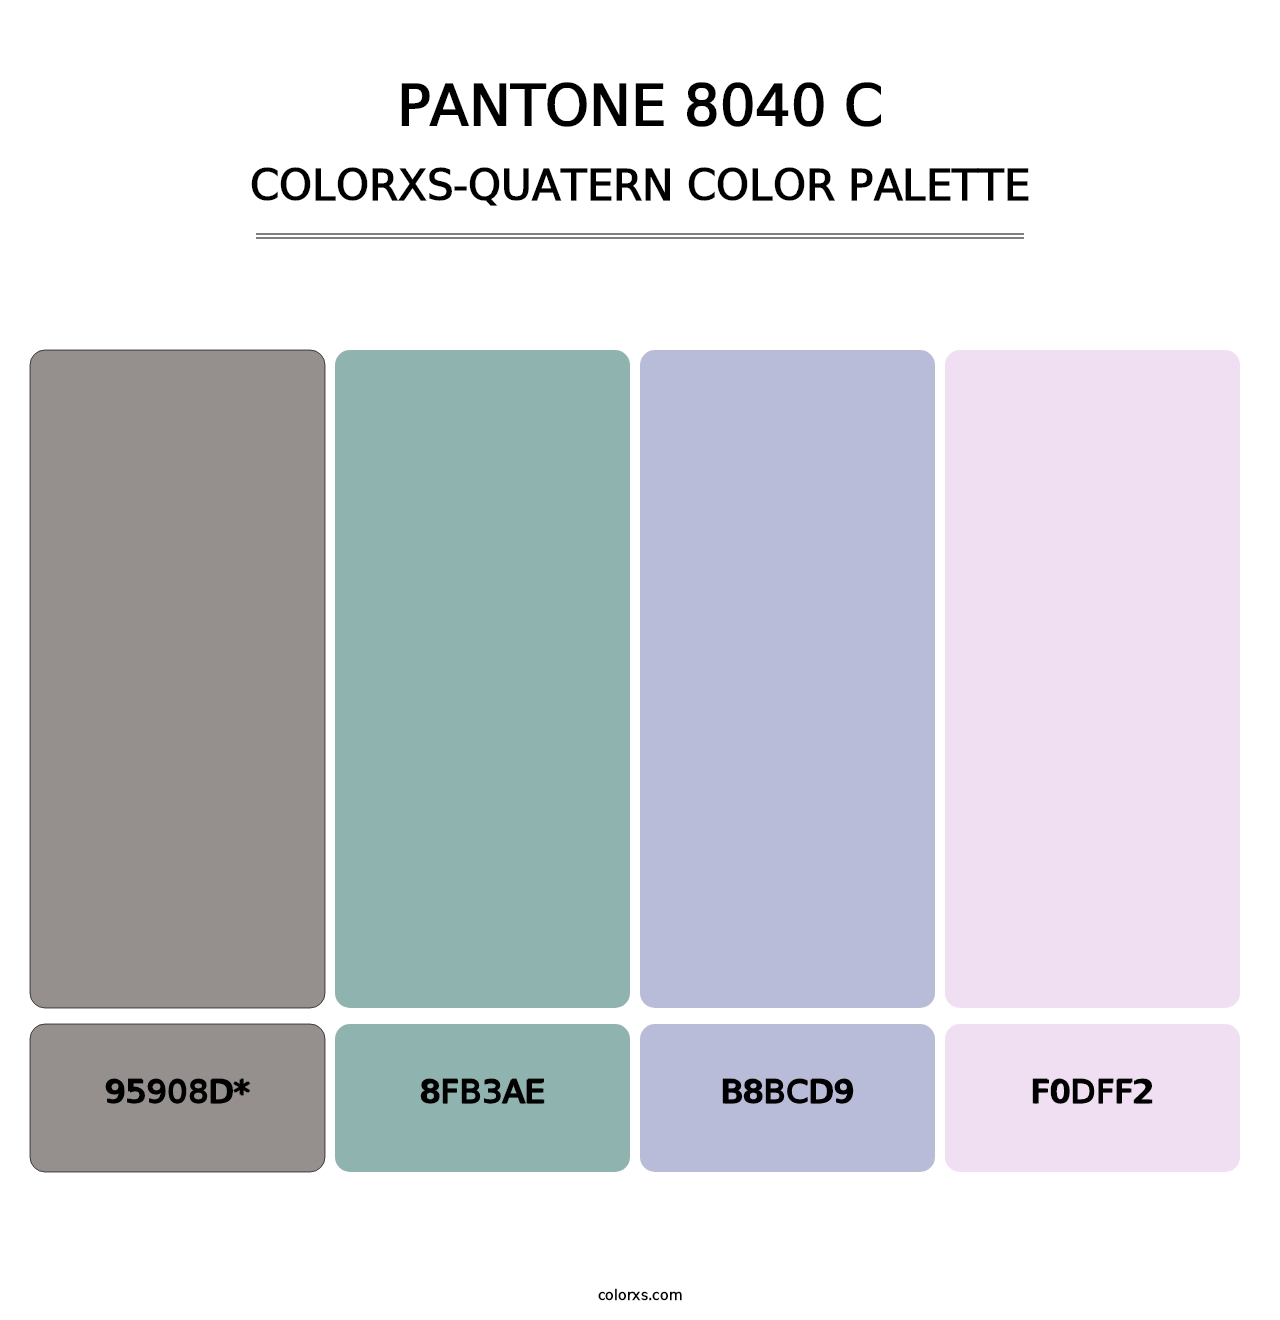 PANTONE 8040 C - Colorxs Quatern Palette